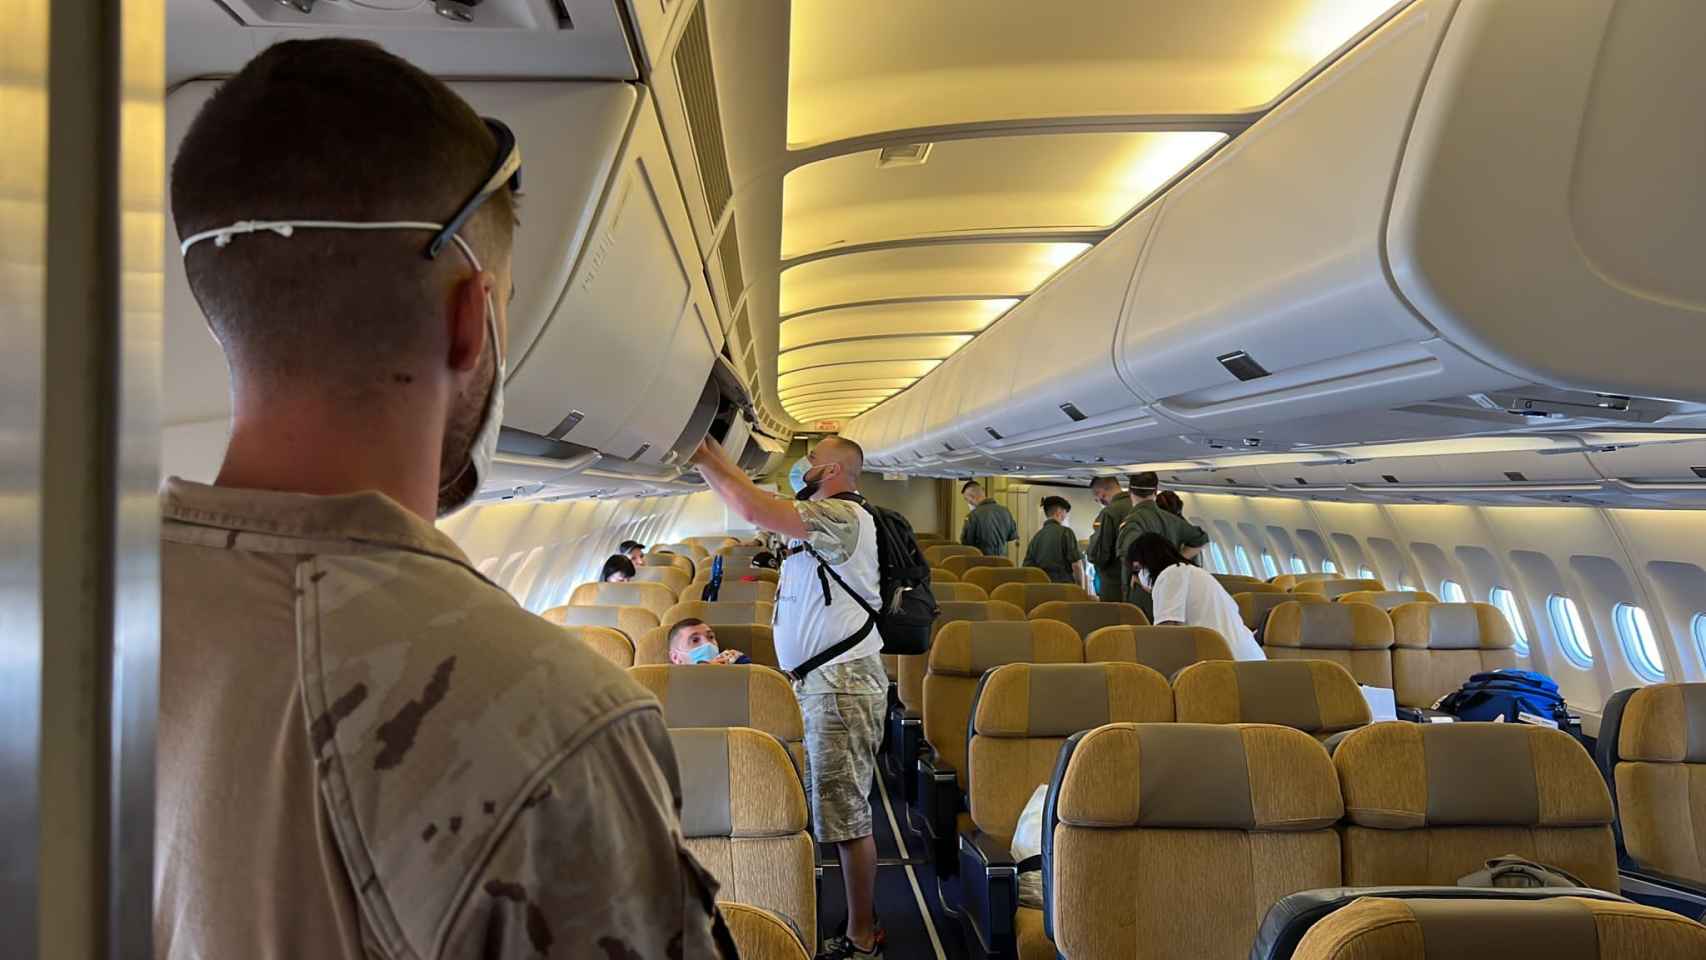 Imágenes del interior del avión con los pasajeros a bordo.